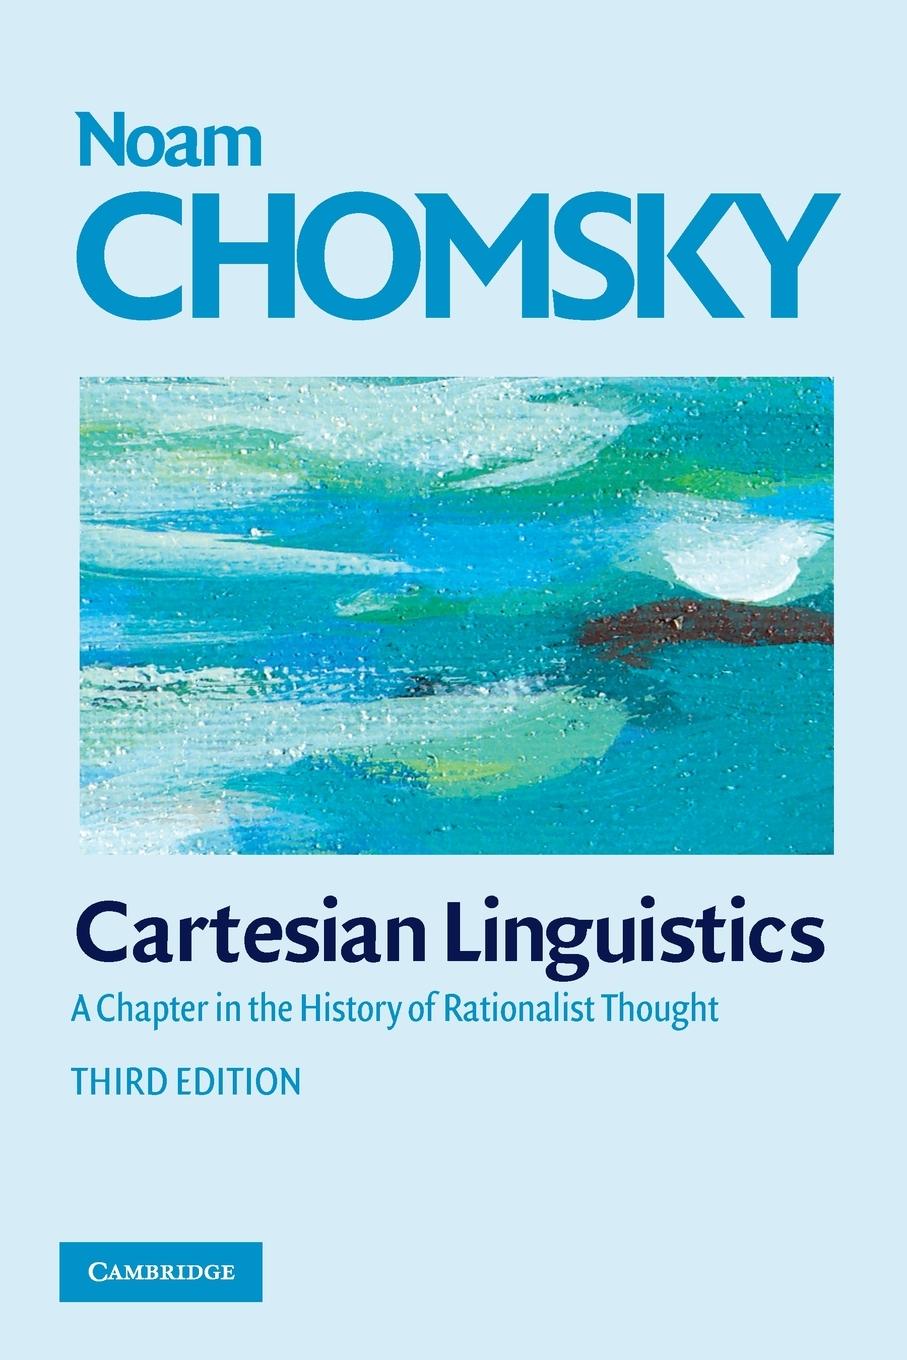 Cartesian Linguistics / Noam Chomsky / Taschenbuch / Paperback / Kartoniert / Broschiert / Englisch / 2009 / Cambridge University Press / EAN 9780521708173 - Chomsky, Noam